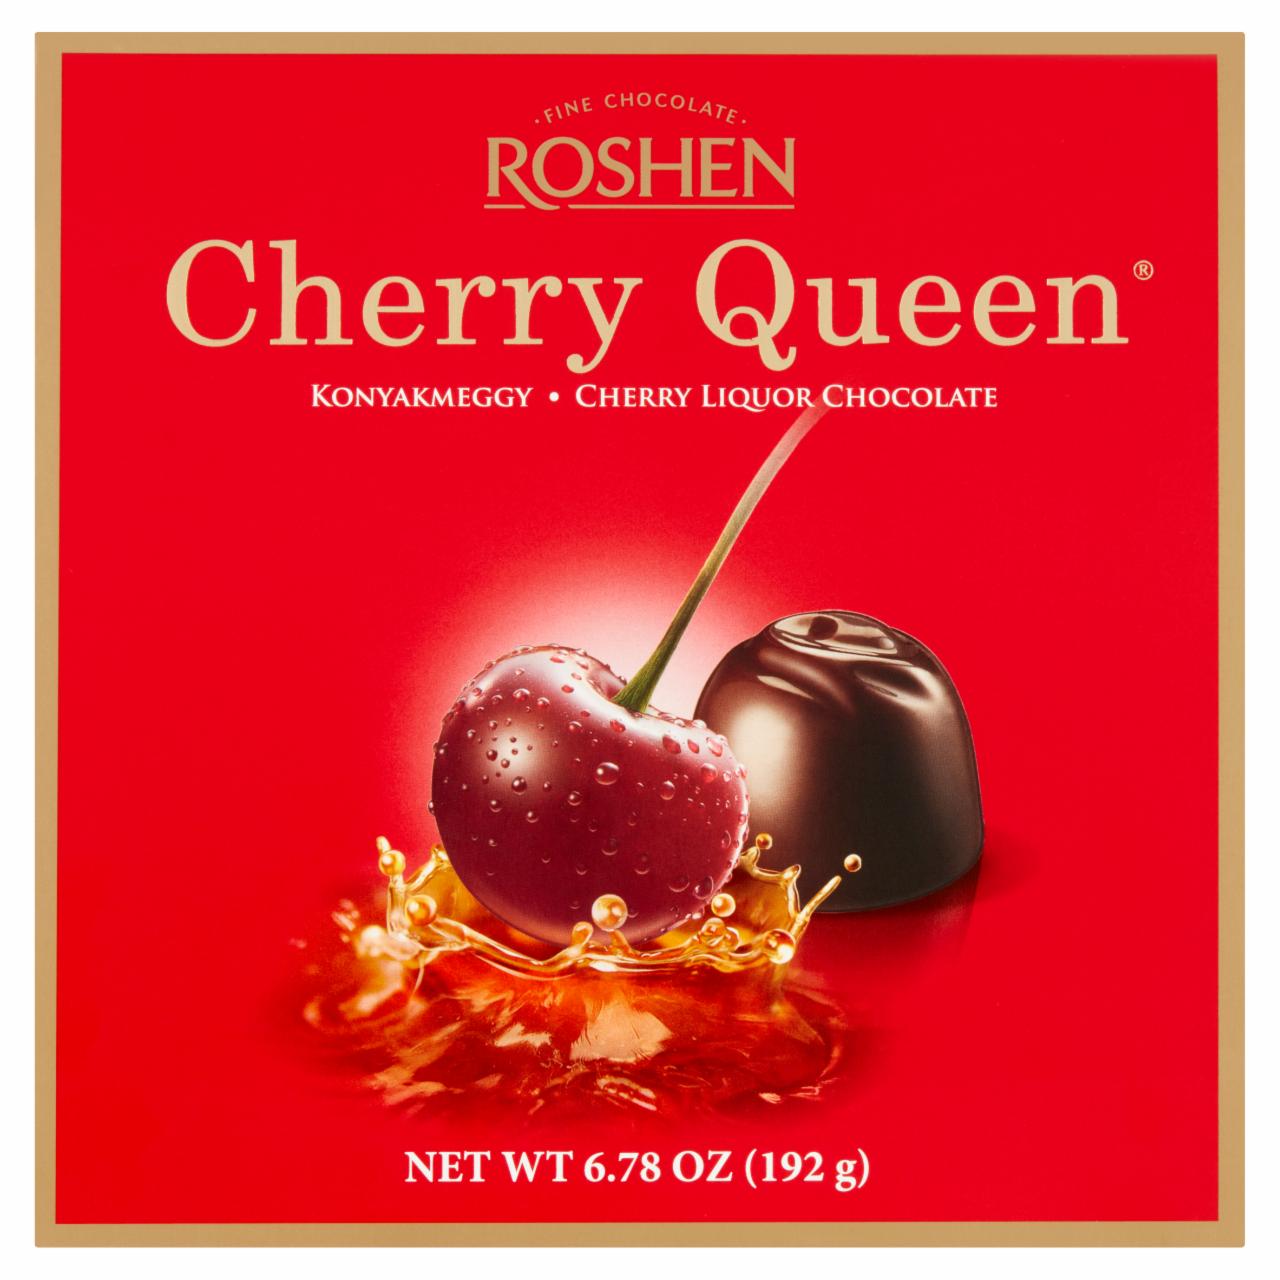 Képek - Roshen Cherry Queen konyakmeggy 192 g